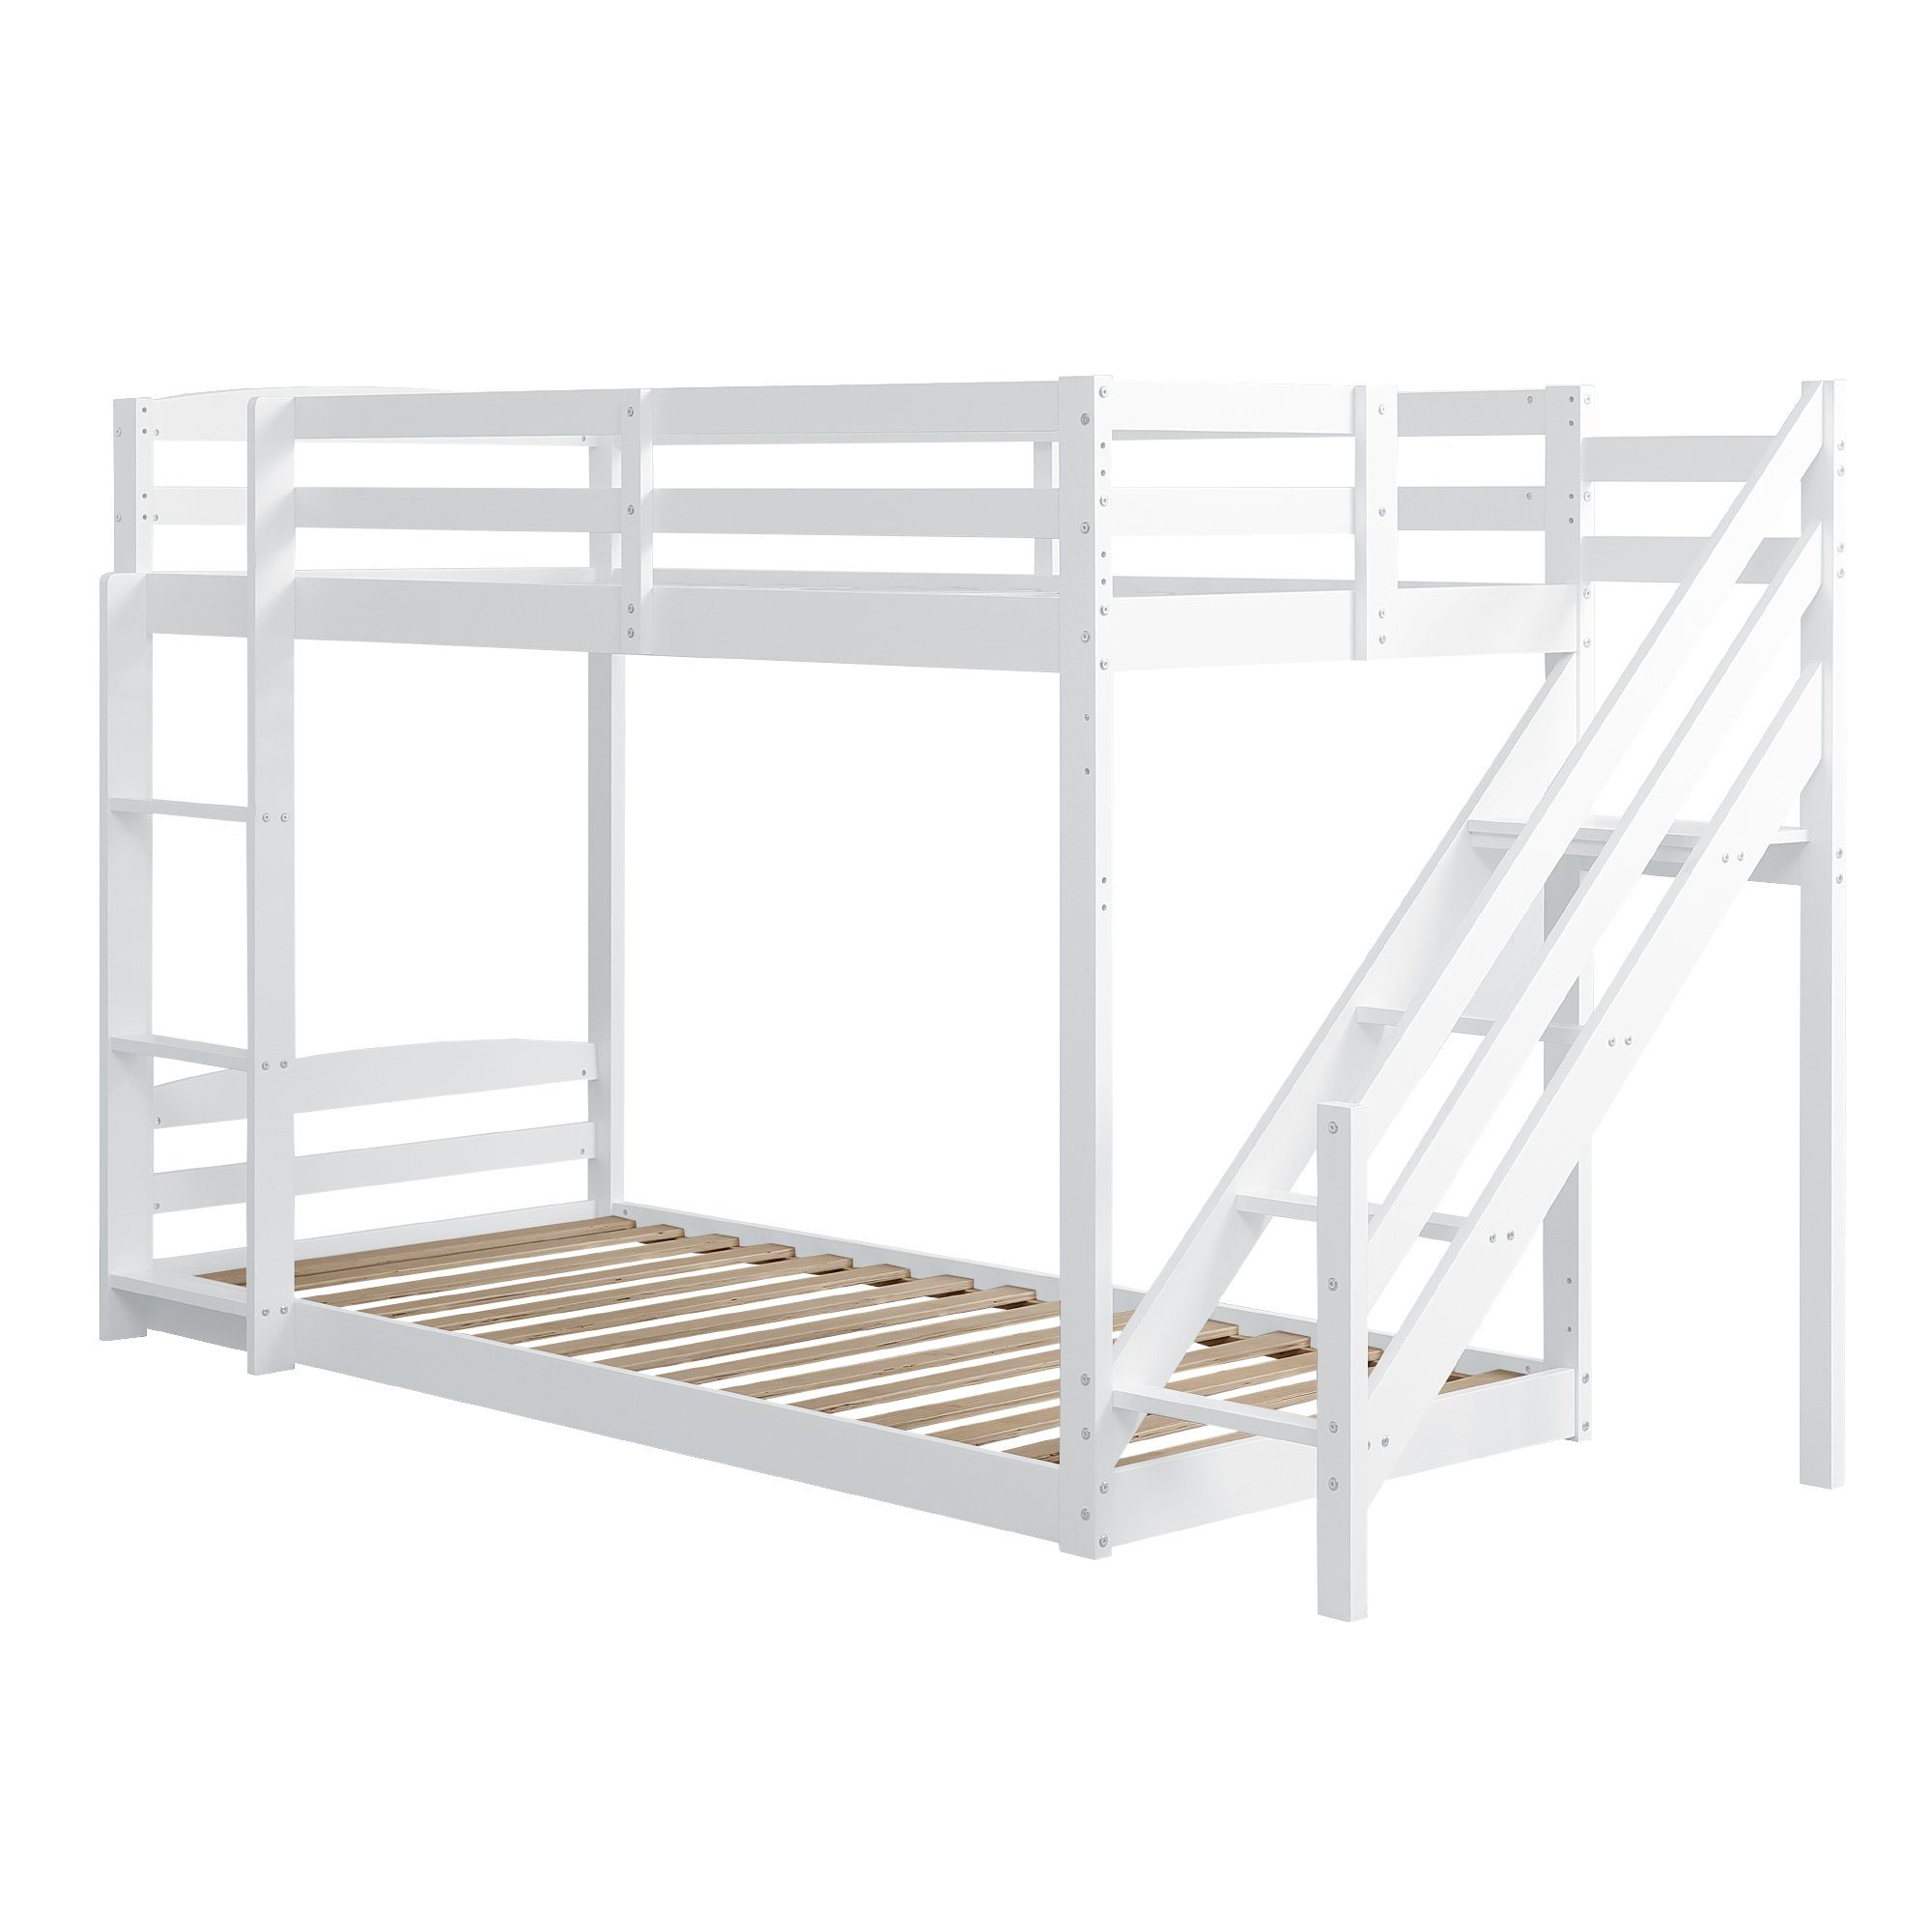 Massivholz, mit Ulife zwei Kinderbett Sicherheitstreppen, Weiß Etagenbett cm 90×200